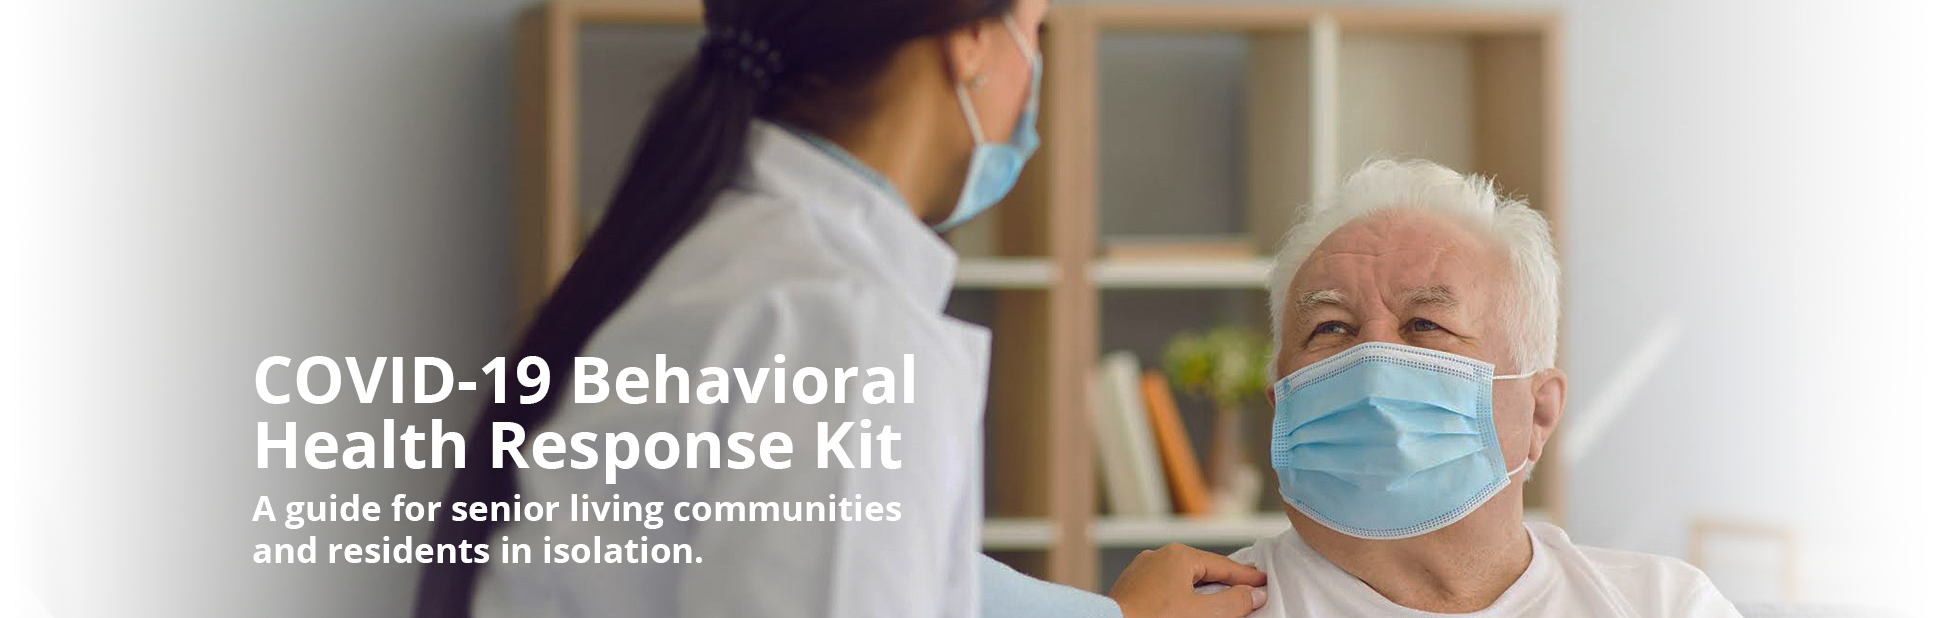 COVID-19 Behavioral Health Response Kit